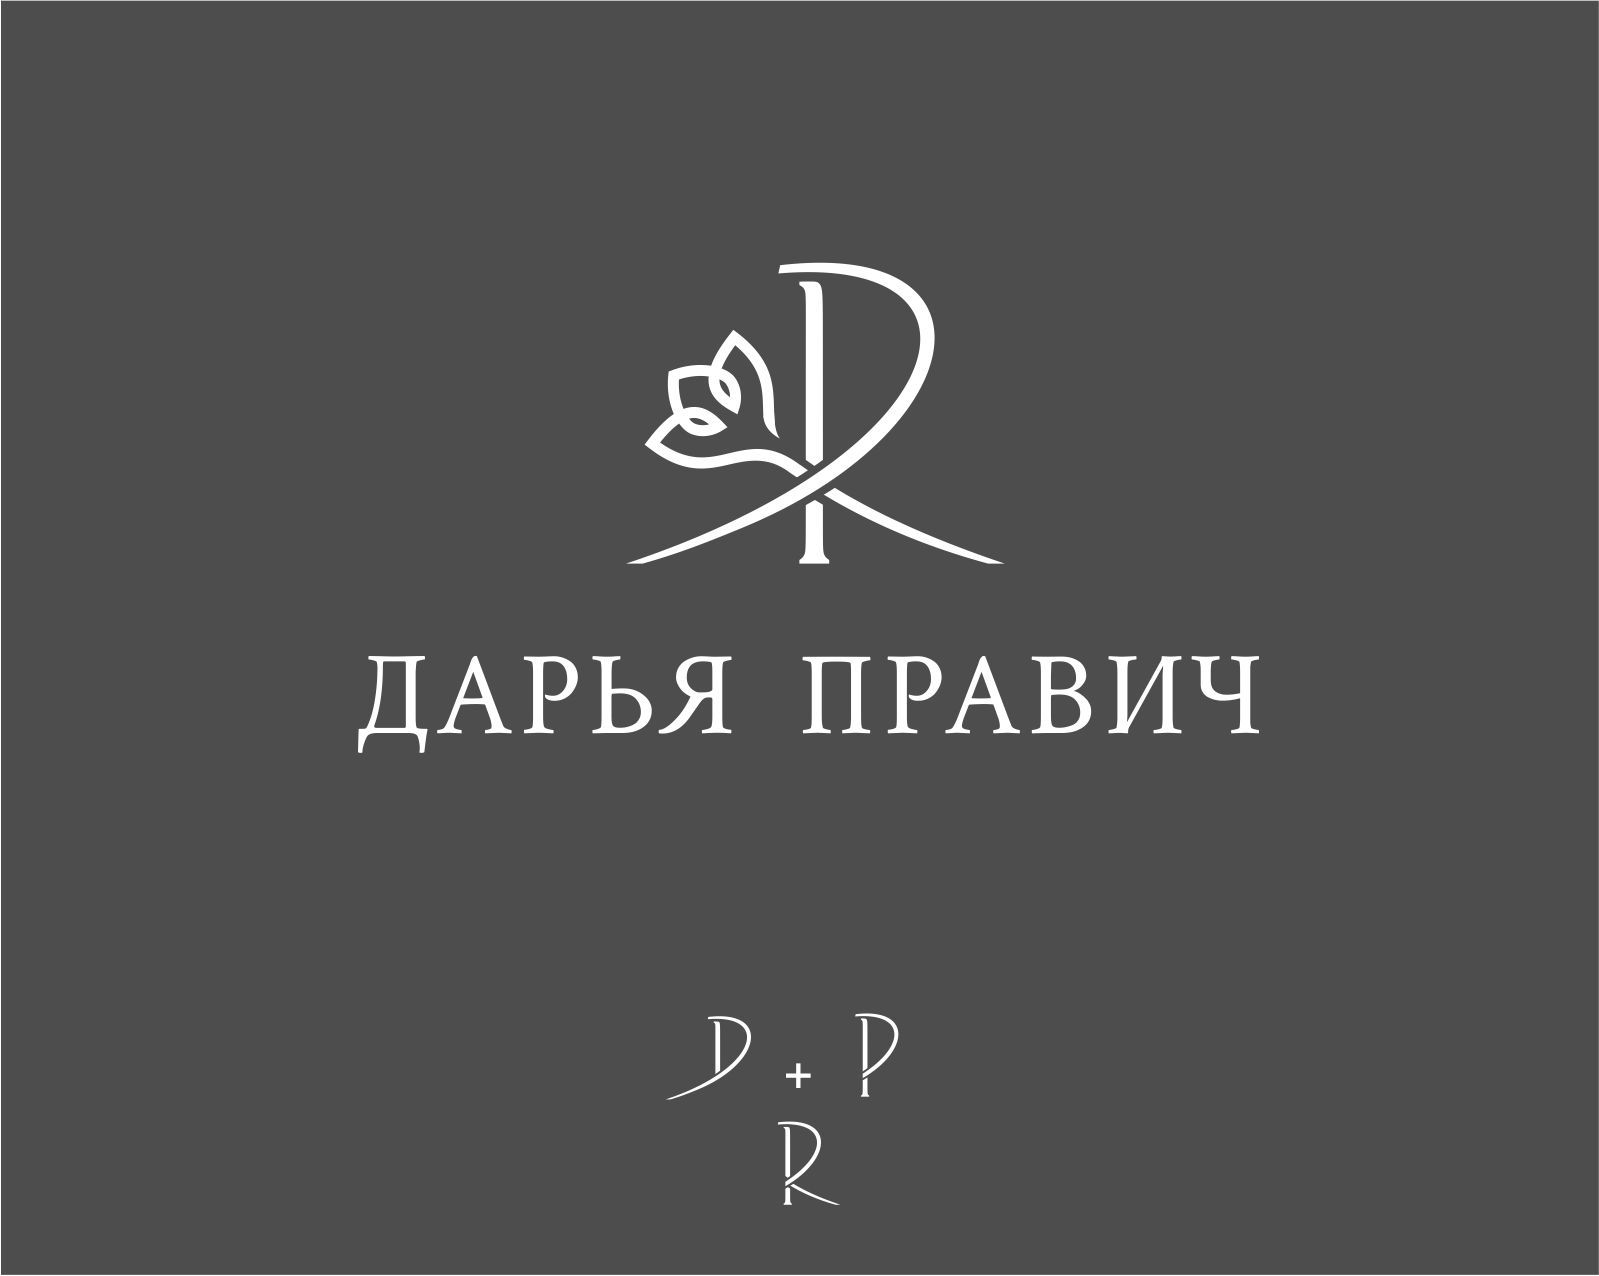 Логотип для Дарья Правич - дизайнер georgian